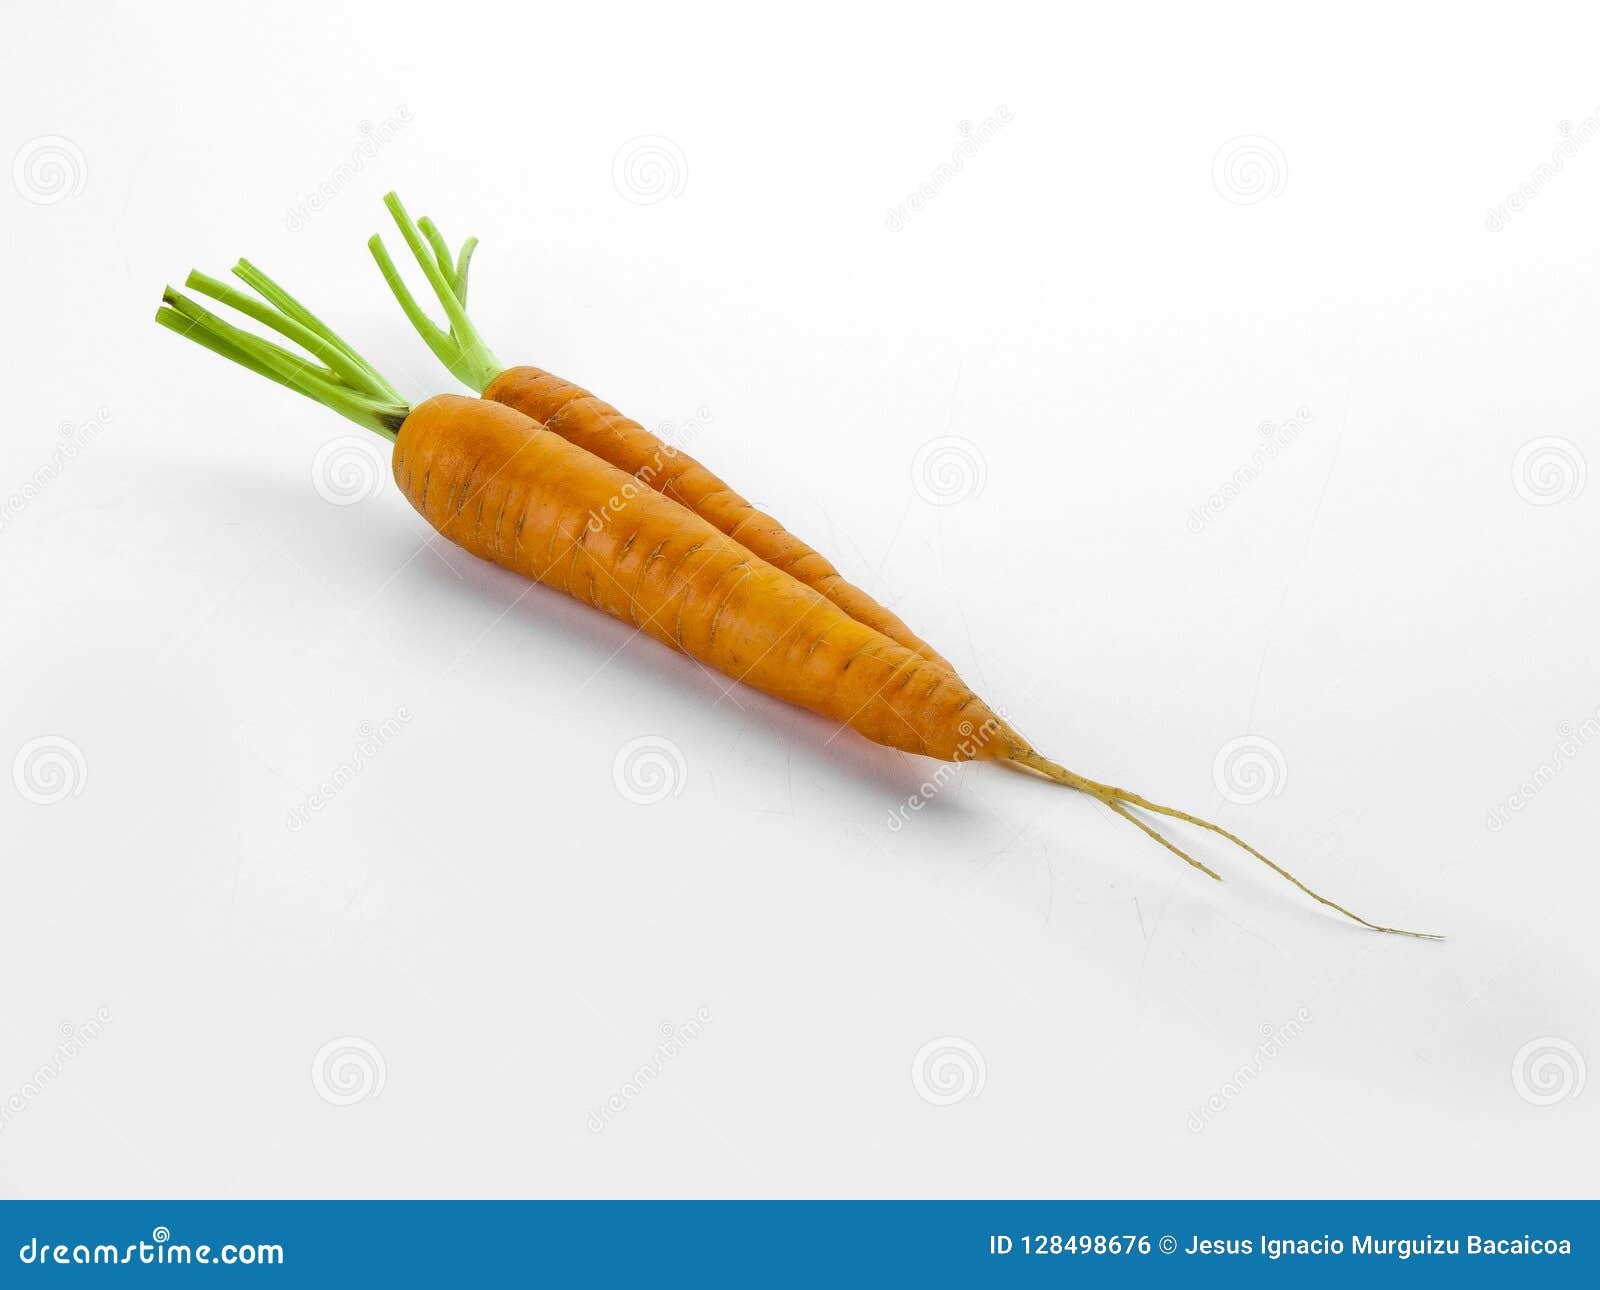 aerial view of two carrots with their respective branches abrir en el traductor de google enviar comentarios